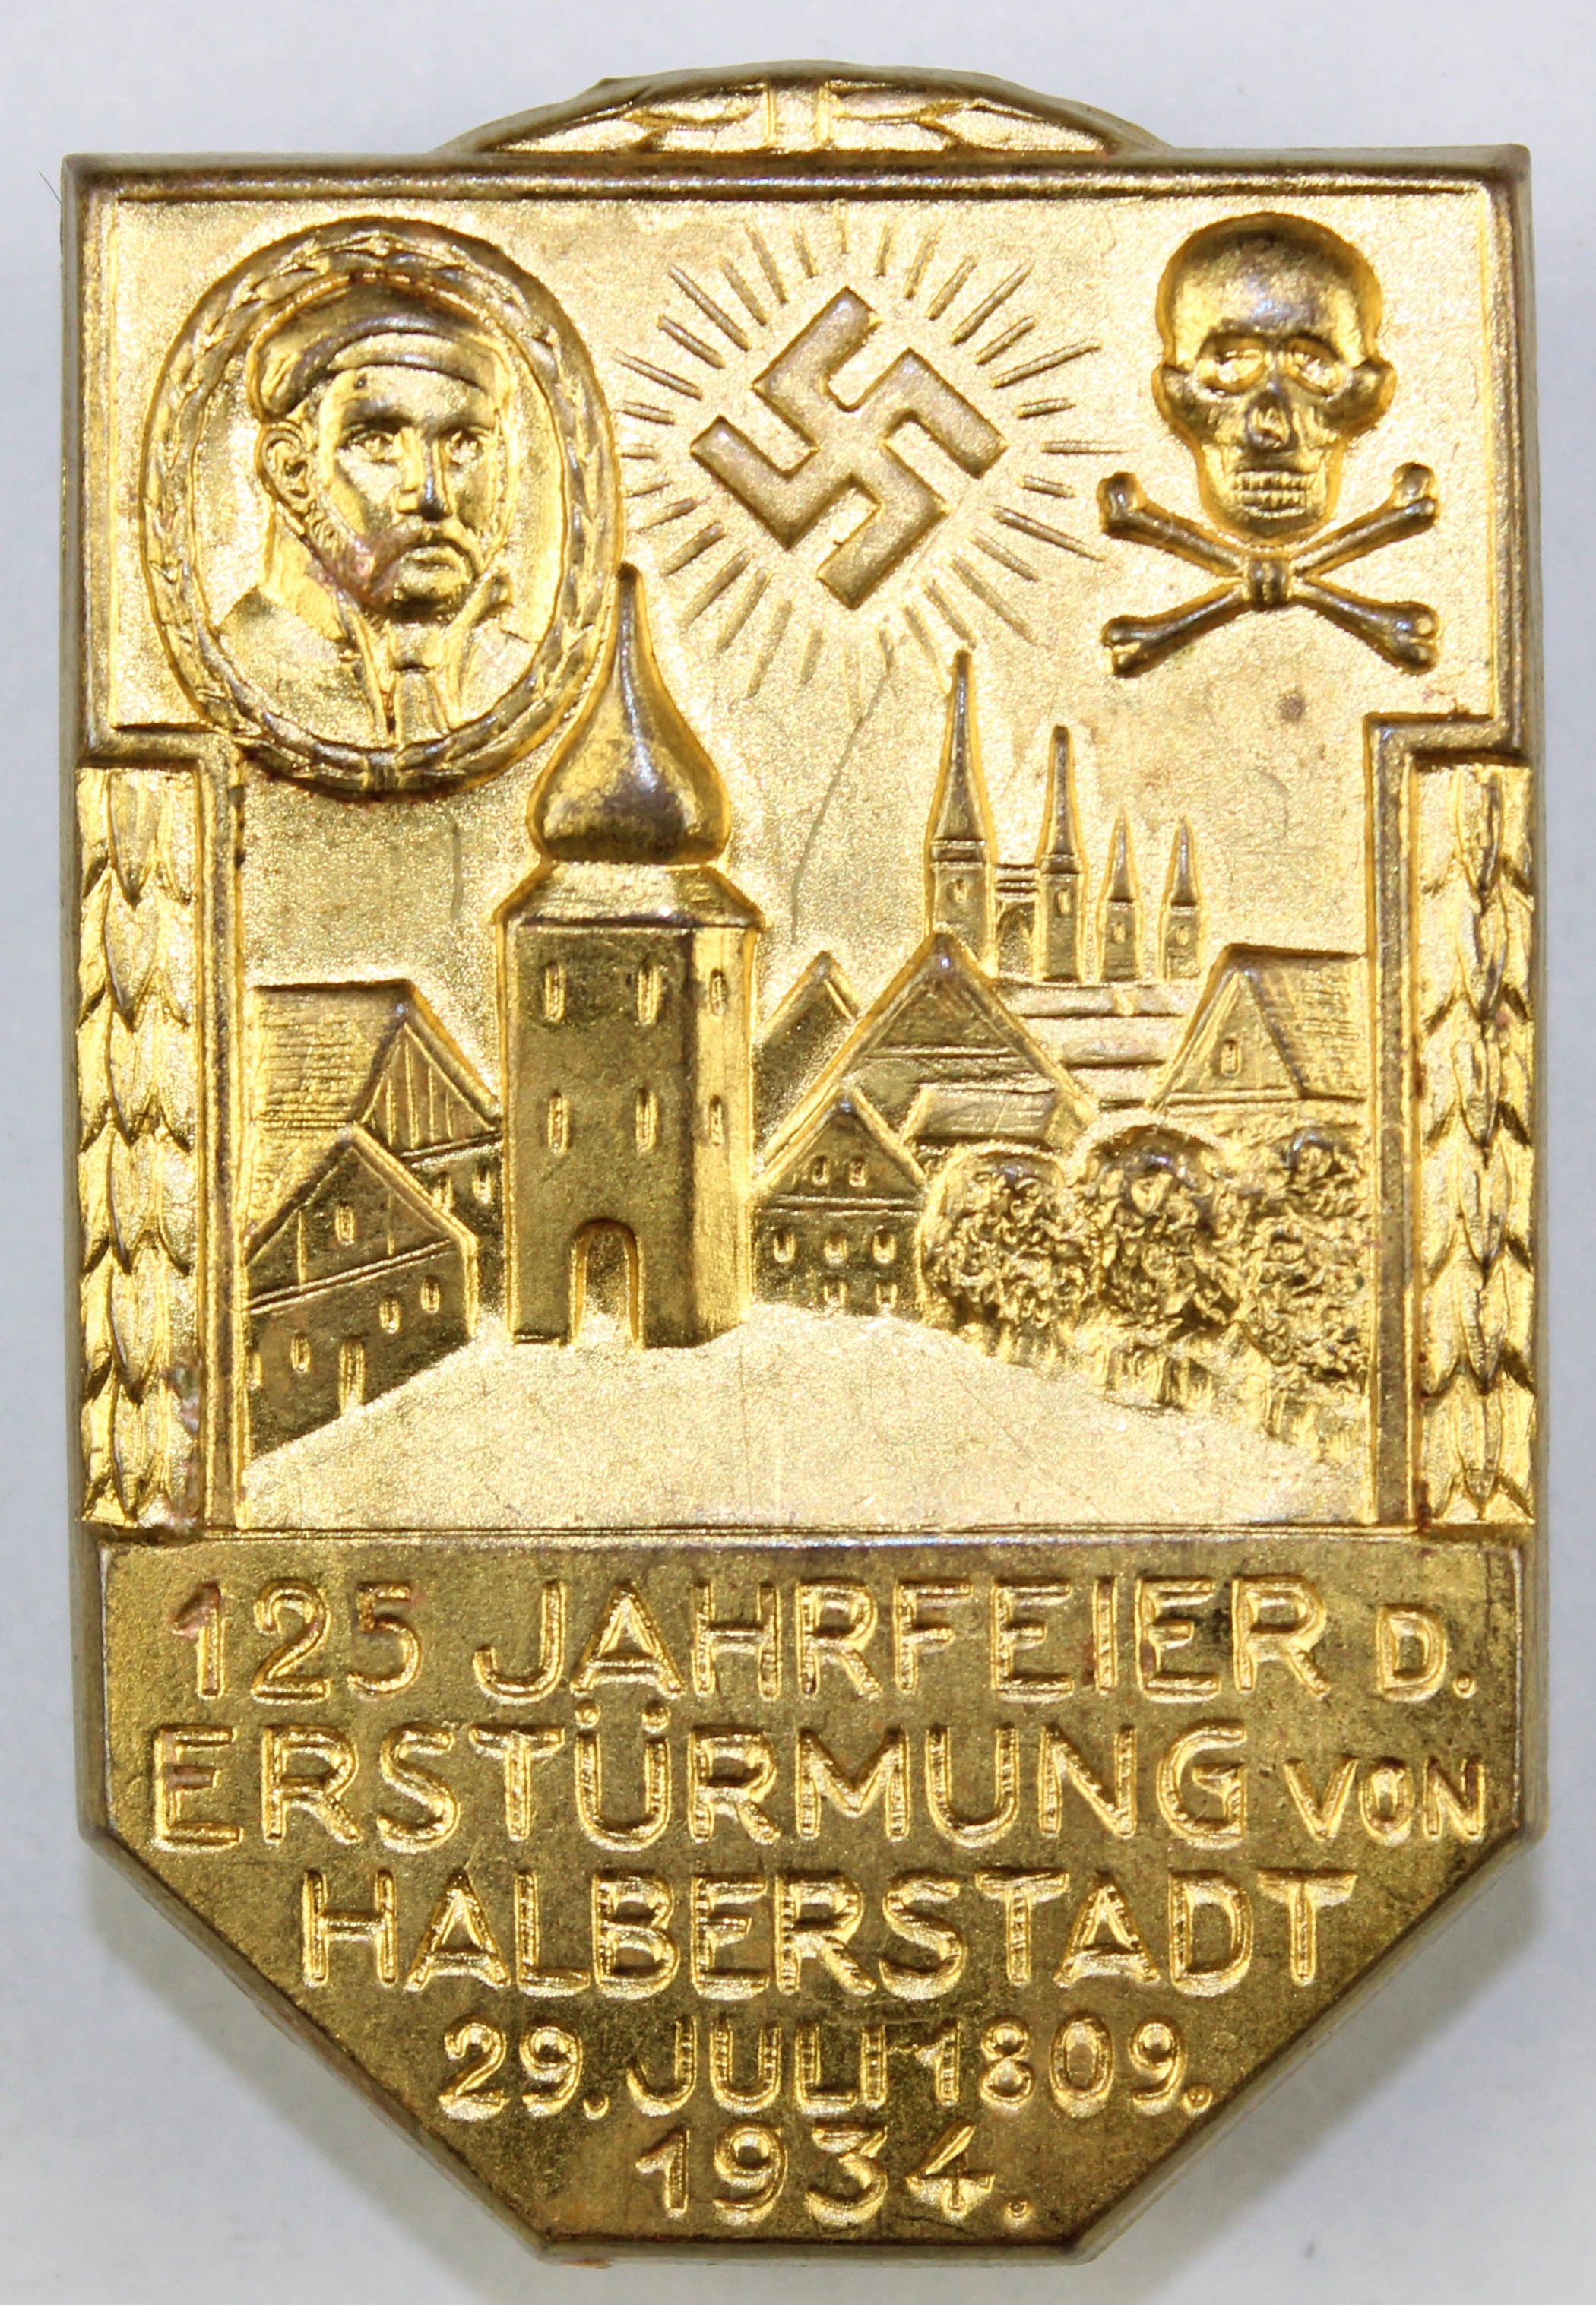 Veranstaltungsabzeichen, Halberstadt, 1934 (Museum Wolmirstedt RR-F)